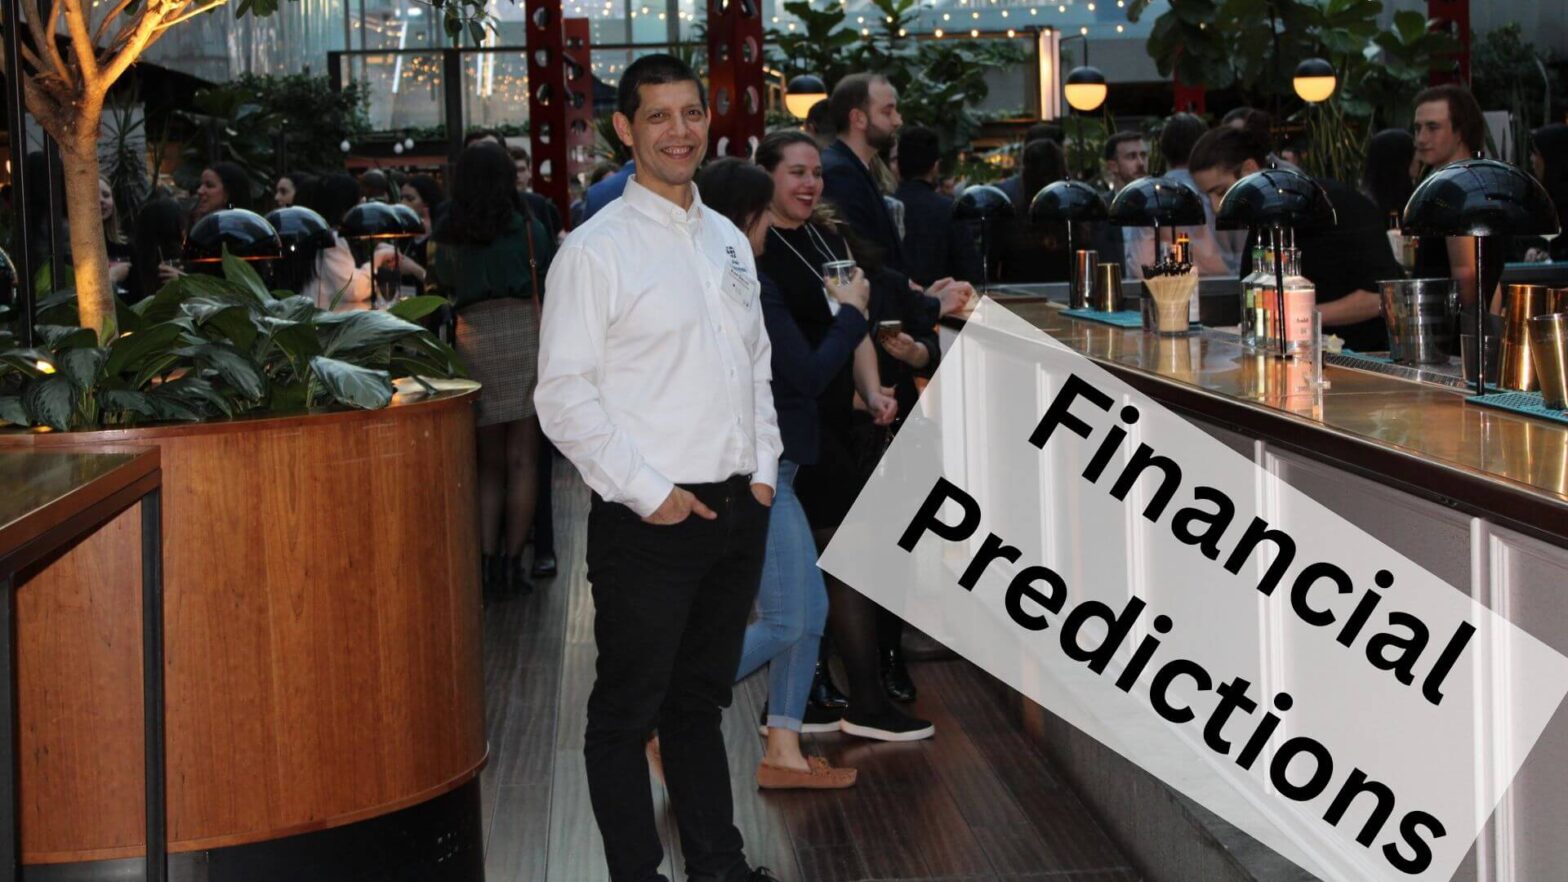 Financial predictions